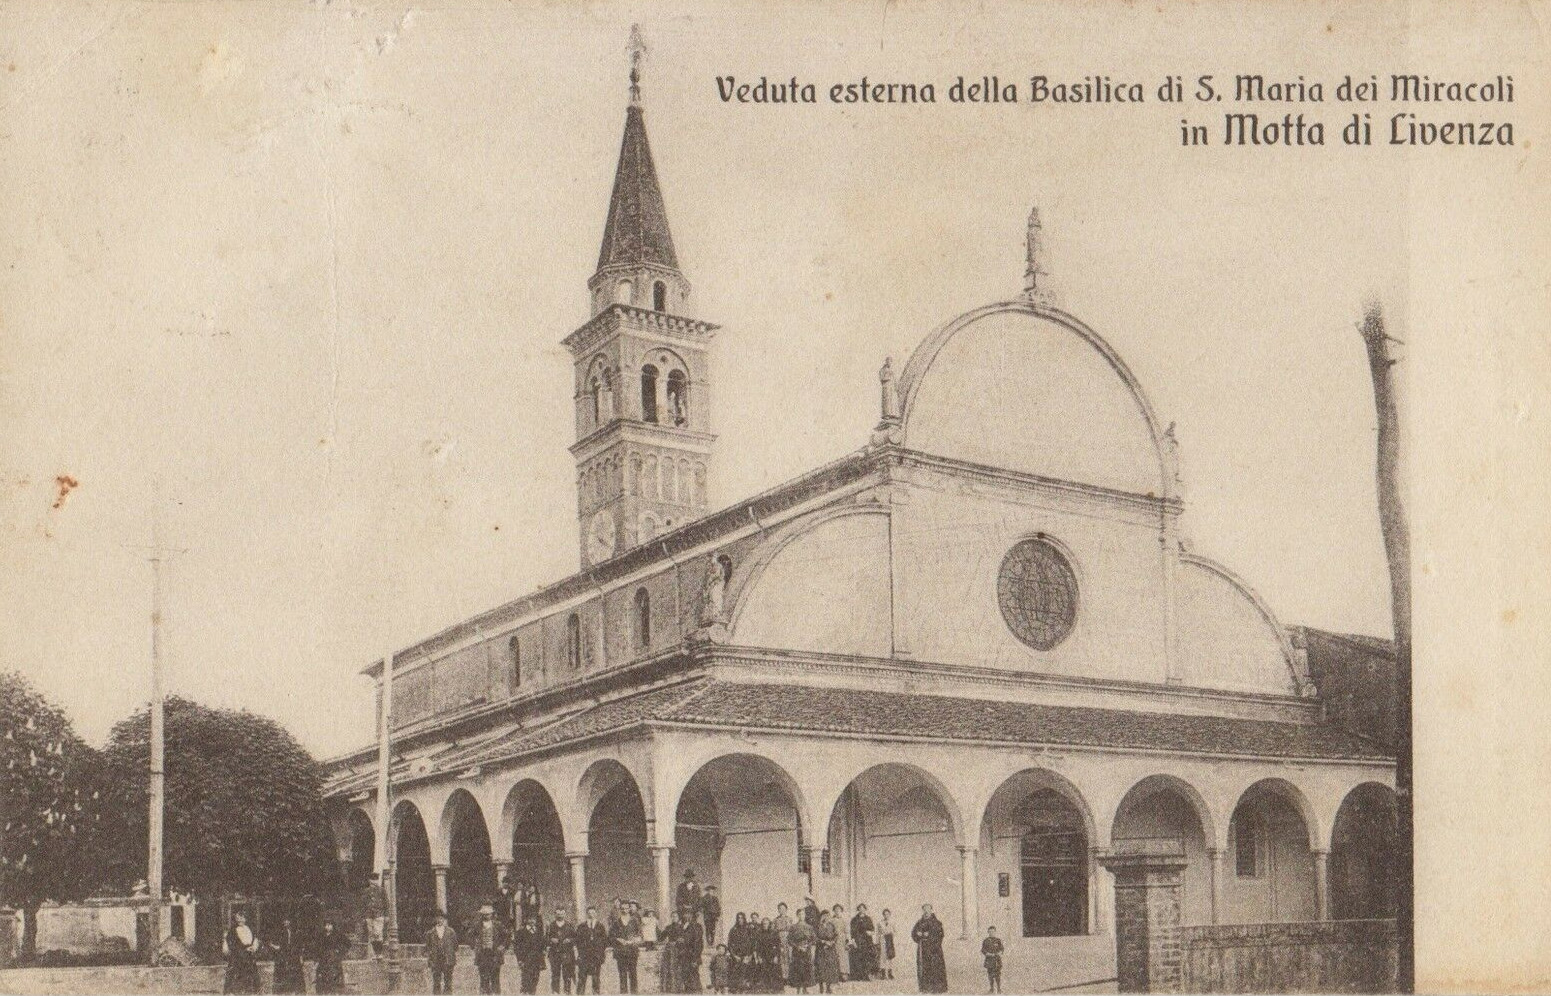 1929-Motta-Veduta-esterna-della-Basilica-di-S-Maria-dei-Miracoli